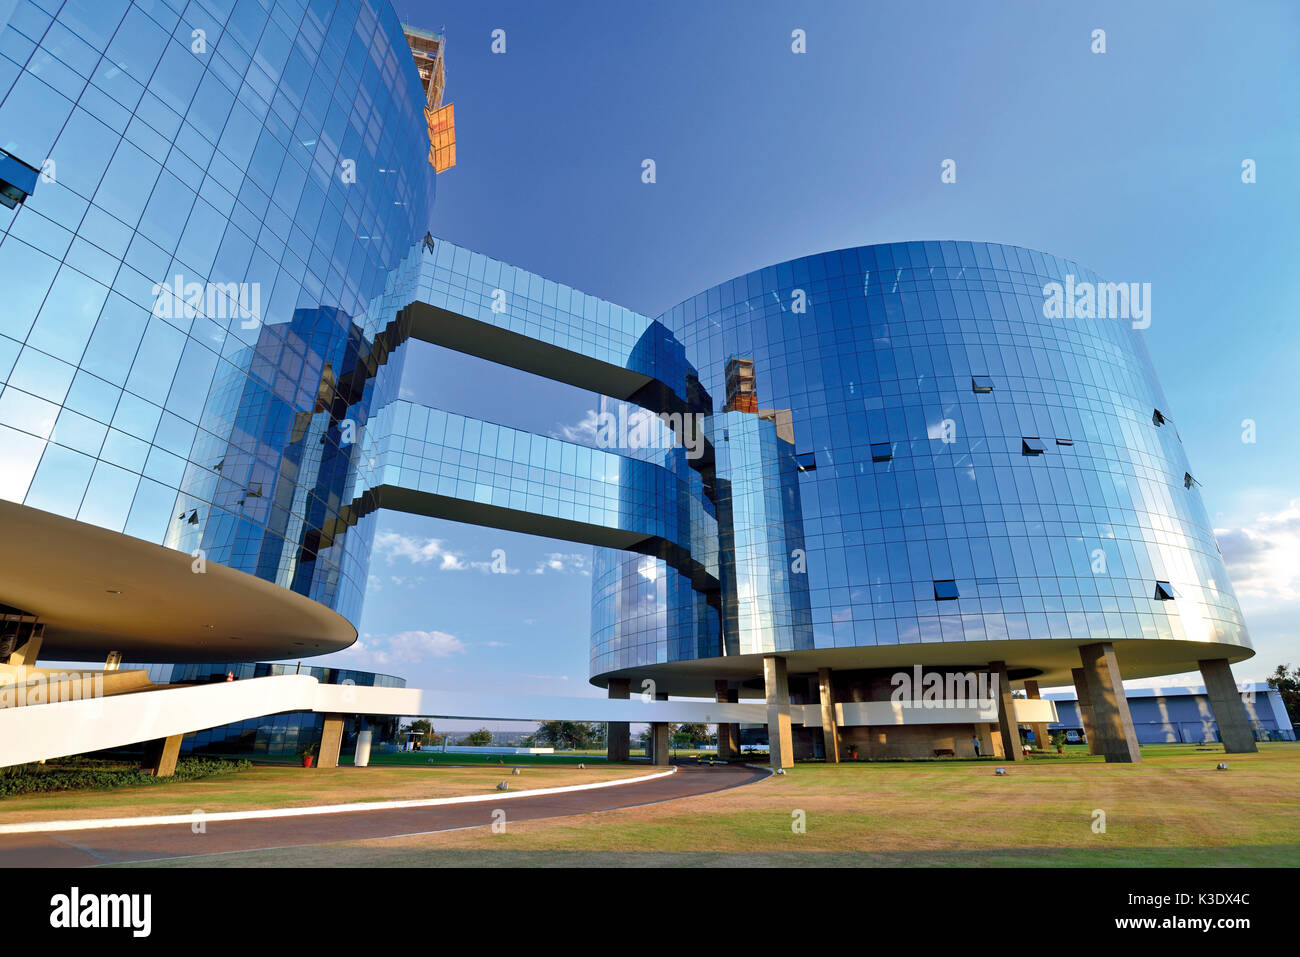 Il brasile, brasile, torri di vetro del pubblico ministero "Procuradoria Geral da Republica', progettato da Oscar Niemeyer all'età di 95 anni, Foto Stock